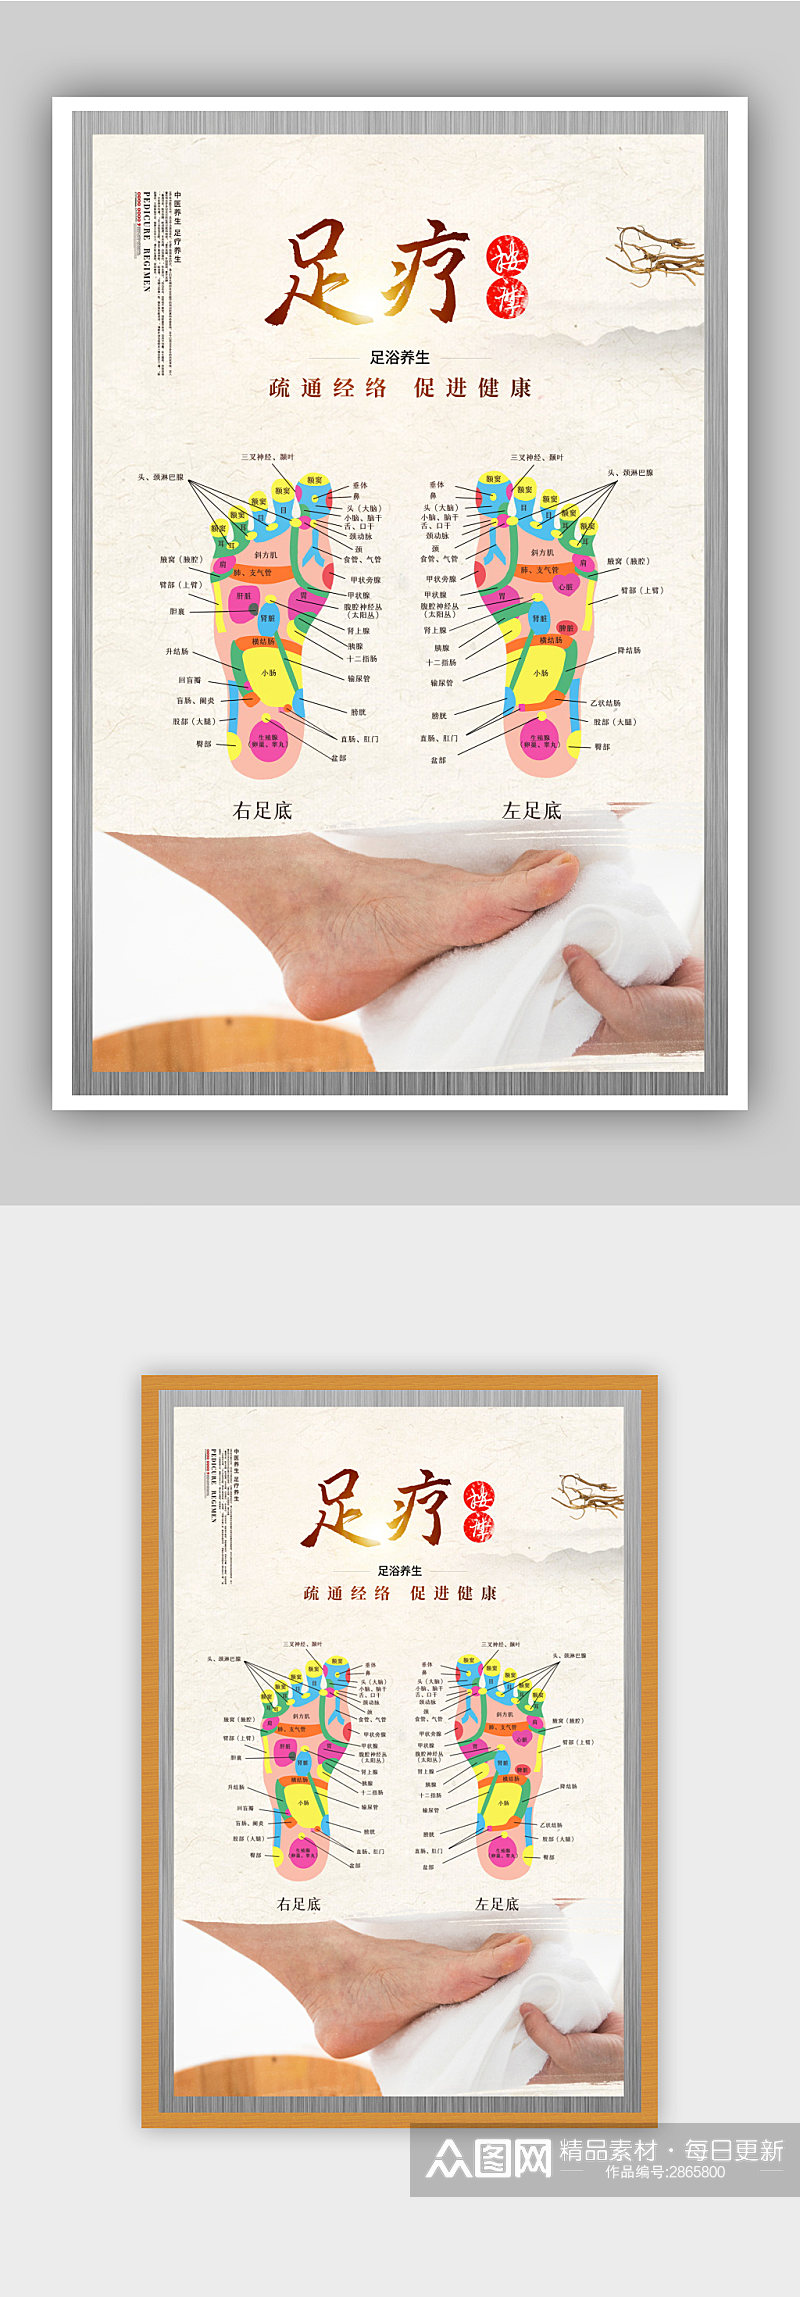 中国风足疗按摩养生文化海报素材